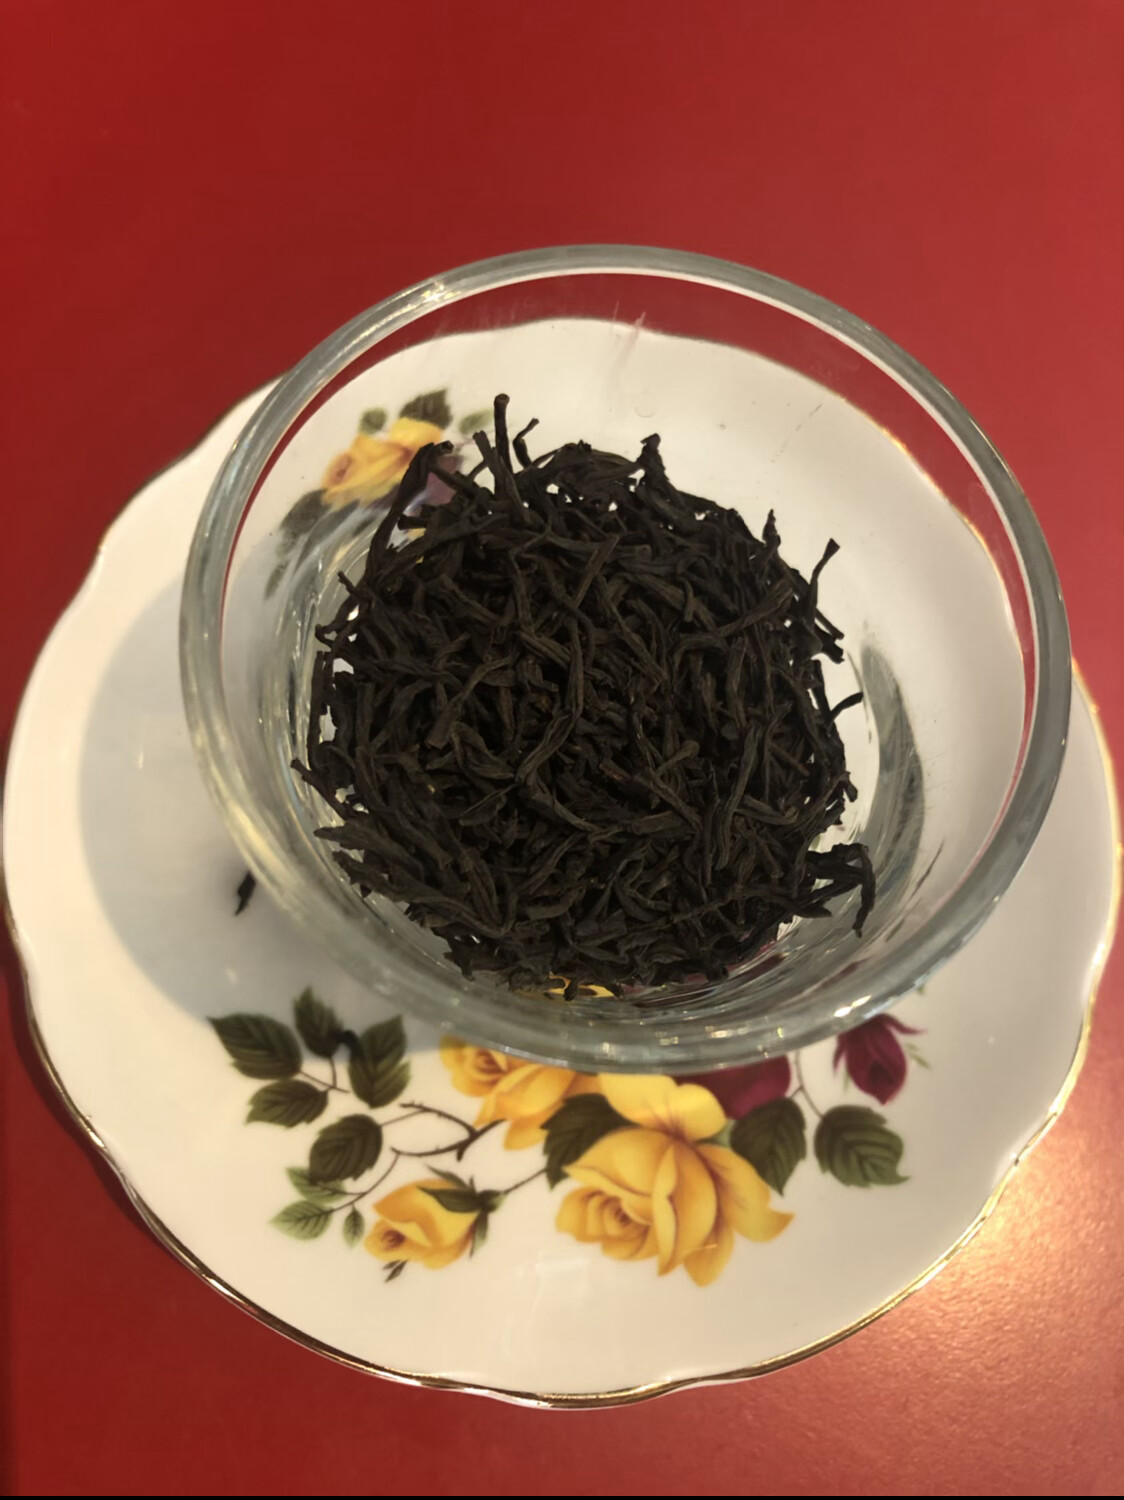 BLACK TEA: Bulk Loose-Leaf Tea, 56 grams